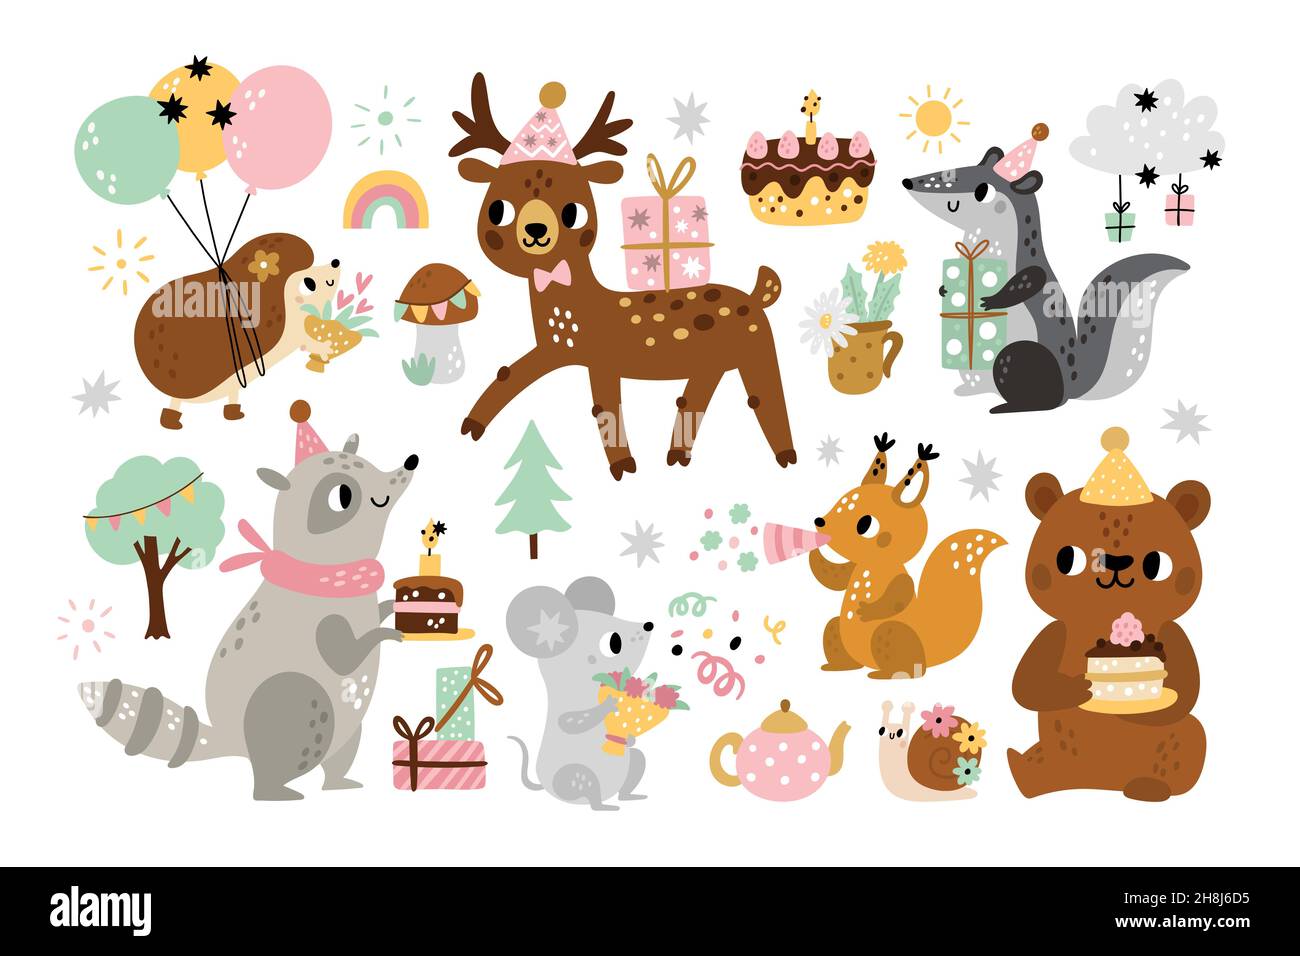 Niedliche Geburtstagstiere. Kids Holiday Party, Kinder Cartoon Wald Zeichen mit dekorativen Attributen, Feier Elemente, Igel mit Ballons Stock Vektor